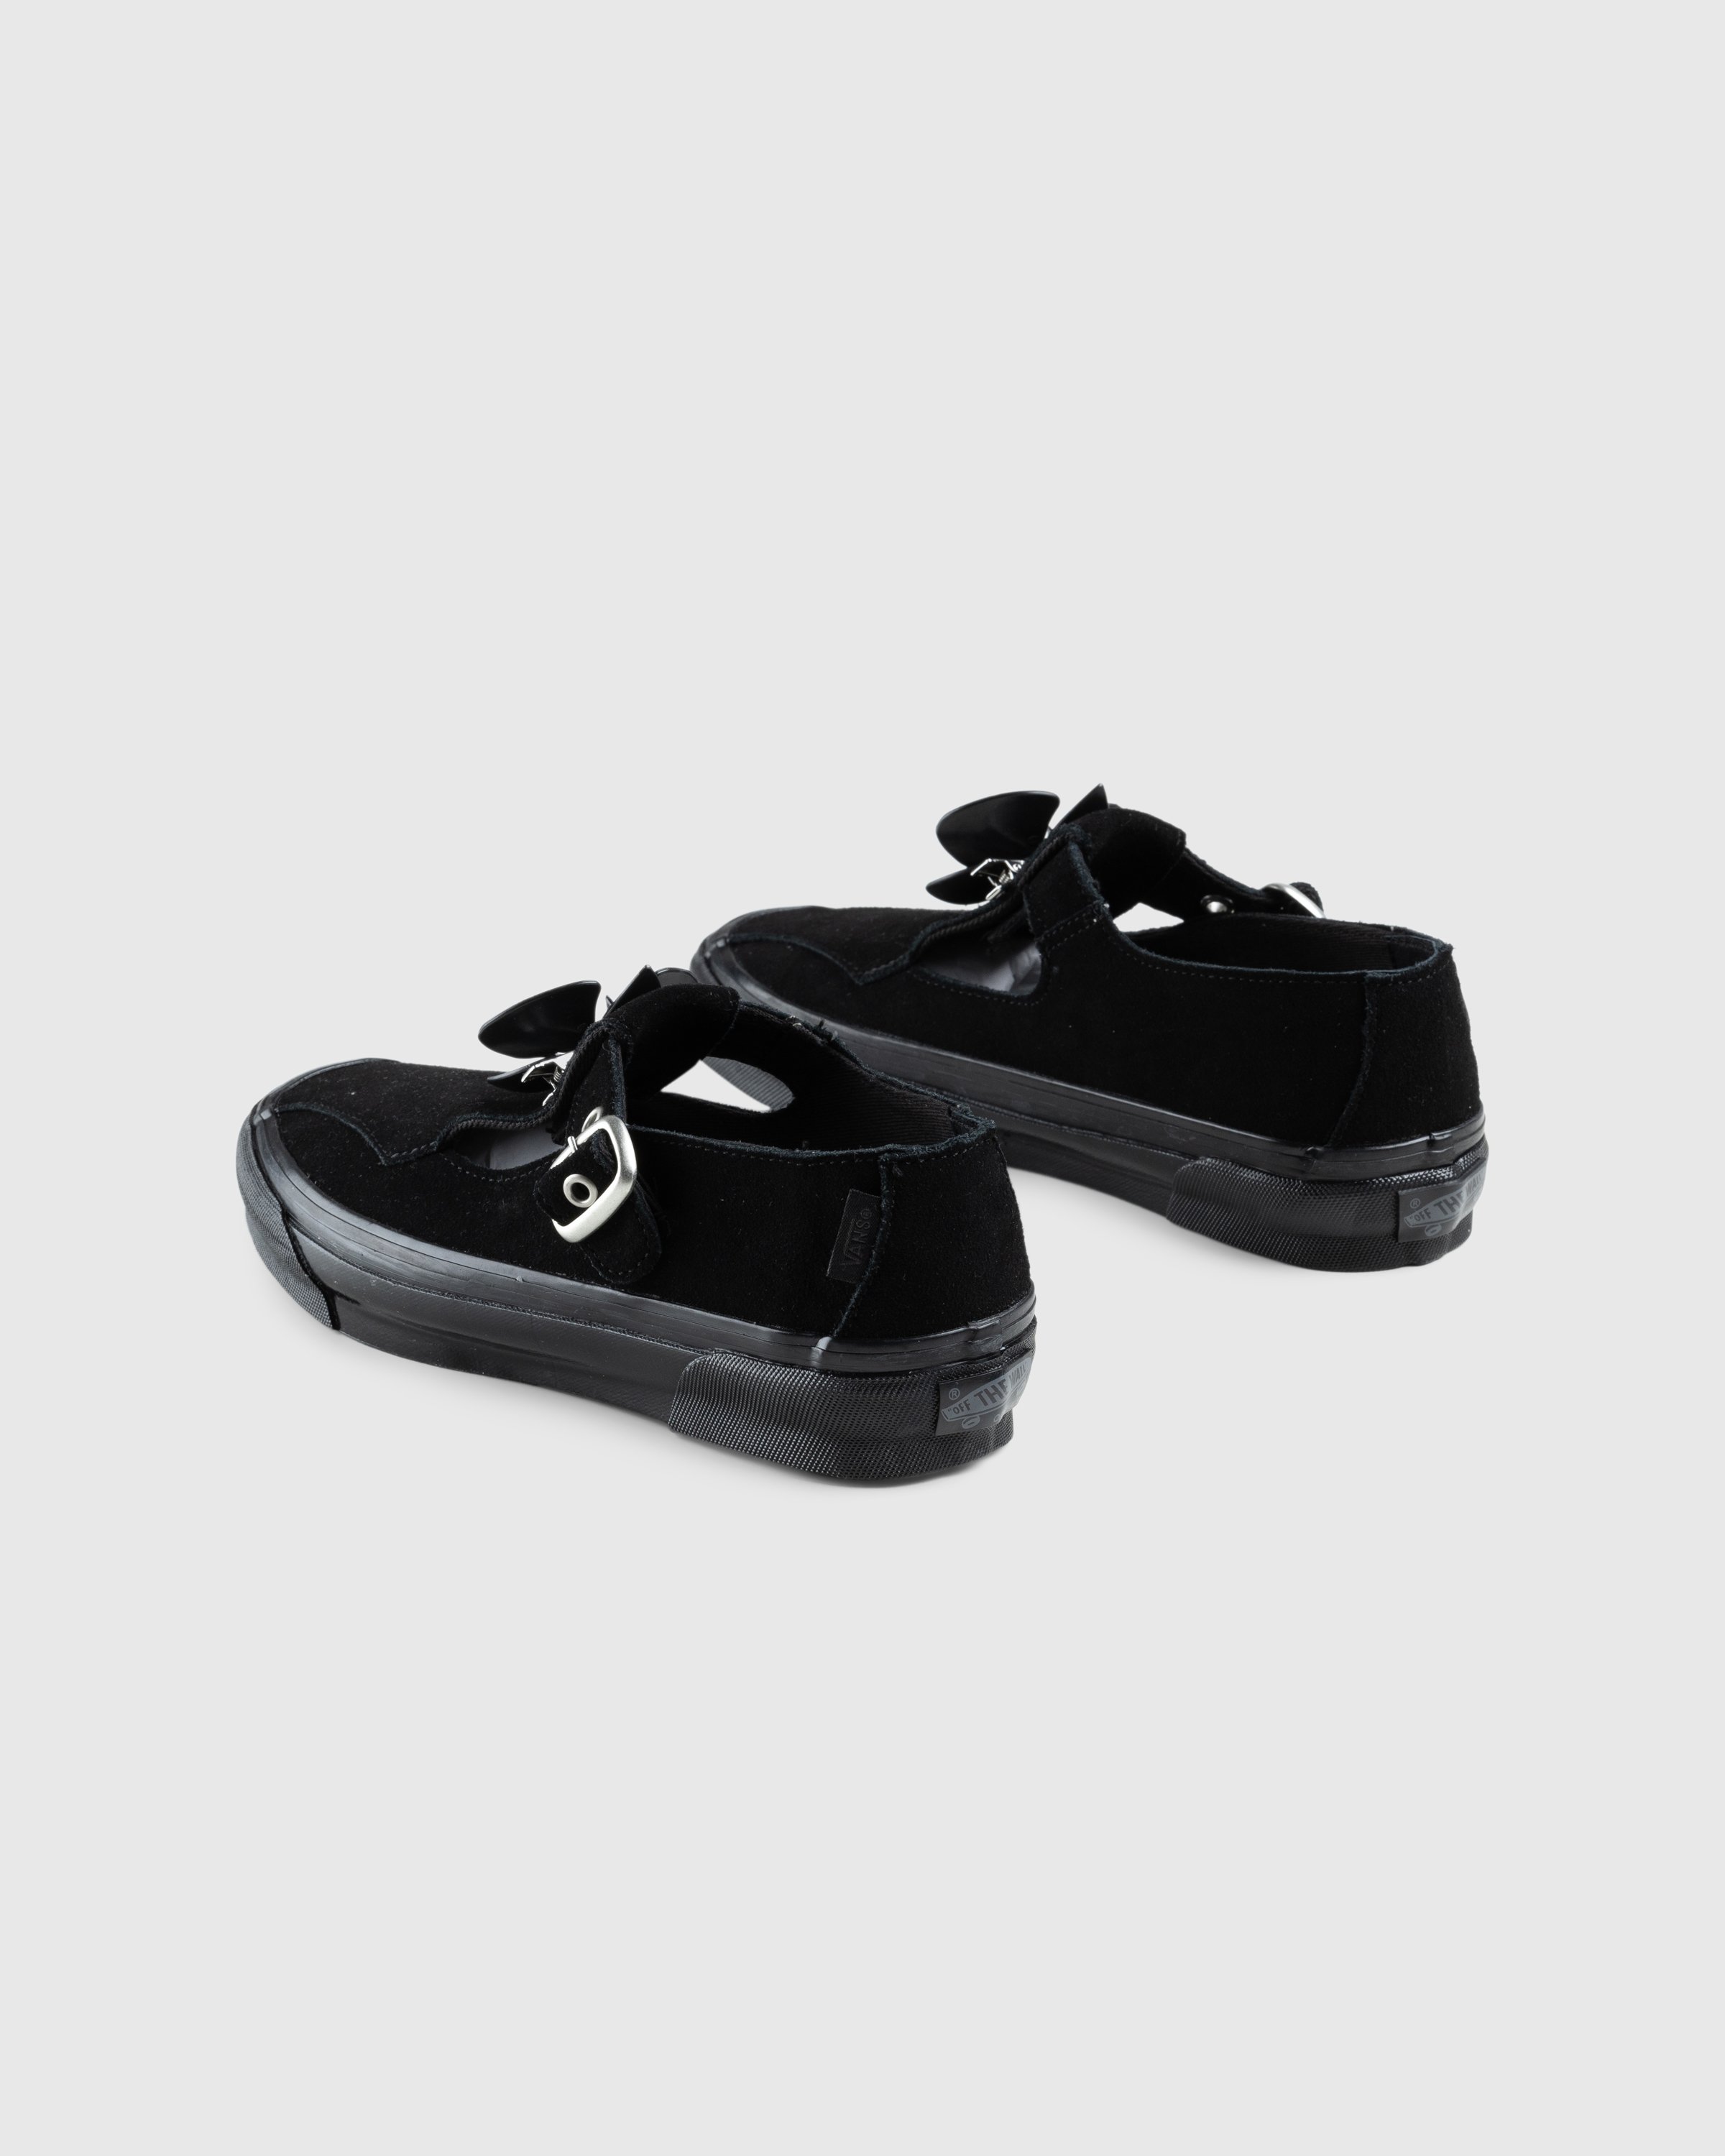 Vans - OG Style 93 LX Black - Footwear - Black - Image 5